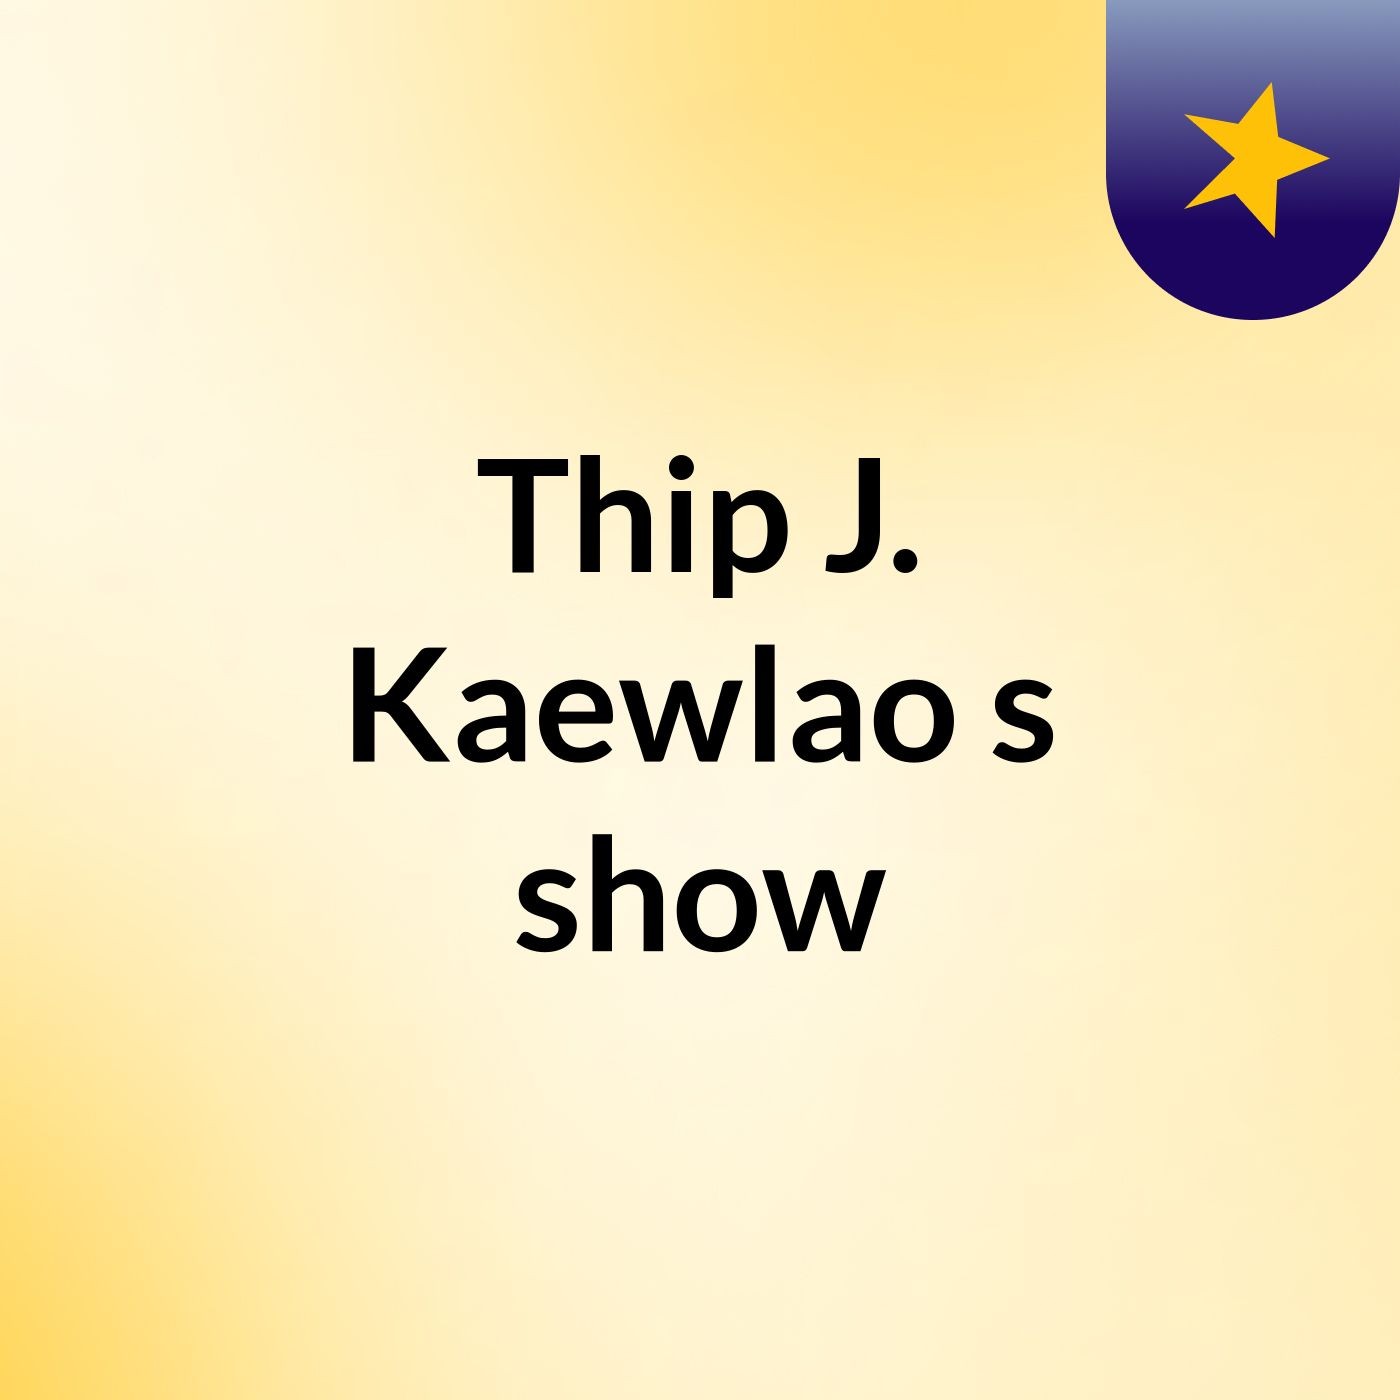 Thip J. Kaewlao's show